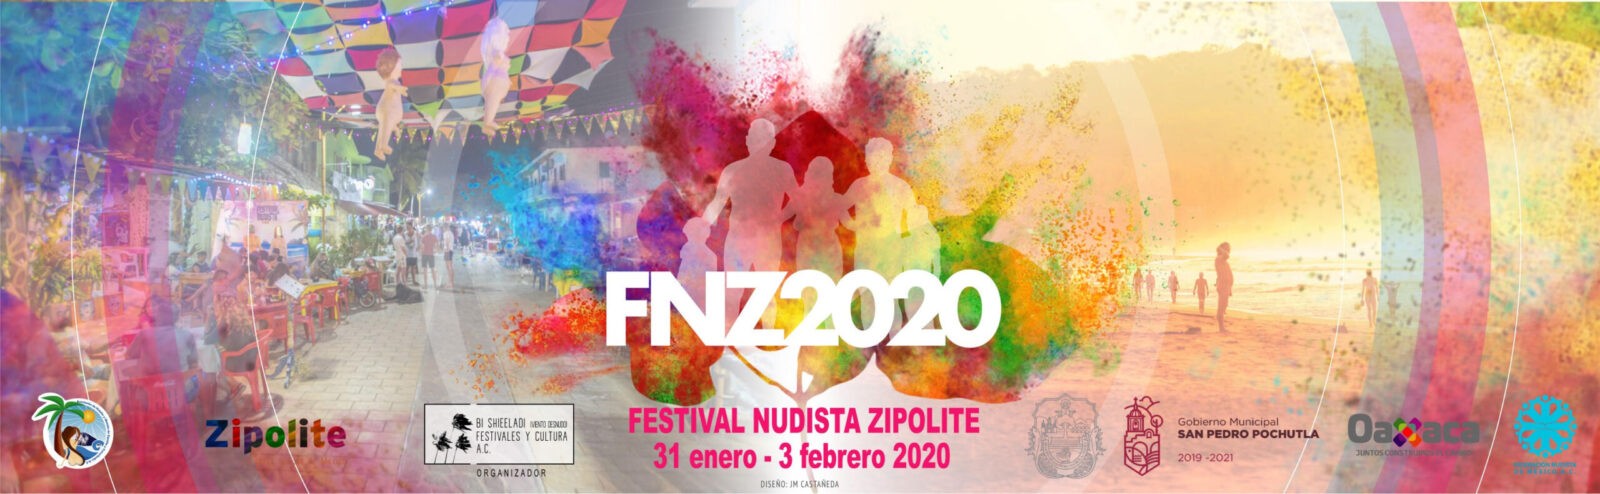 Zipolite está listo para el Festival Nudista 2020